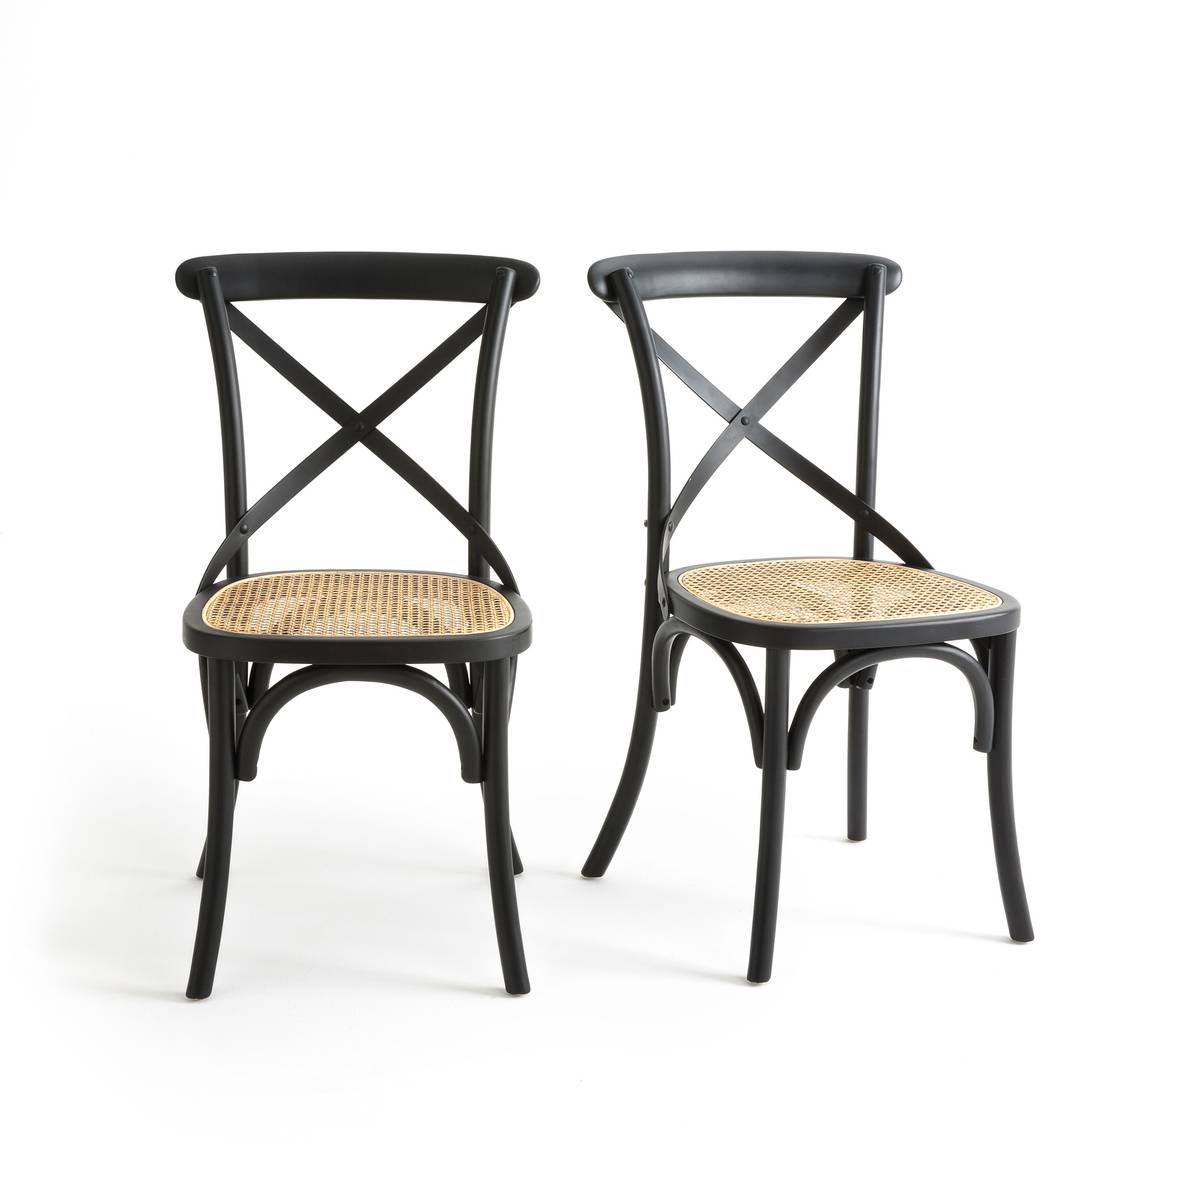 Комплект из двух стульев из дерева и плетения Cedak 32 299 руб.